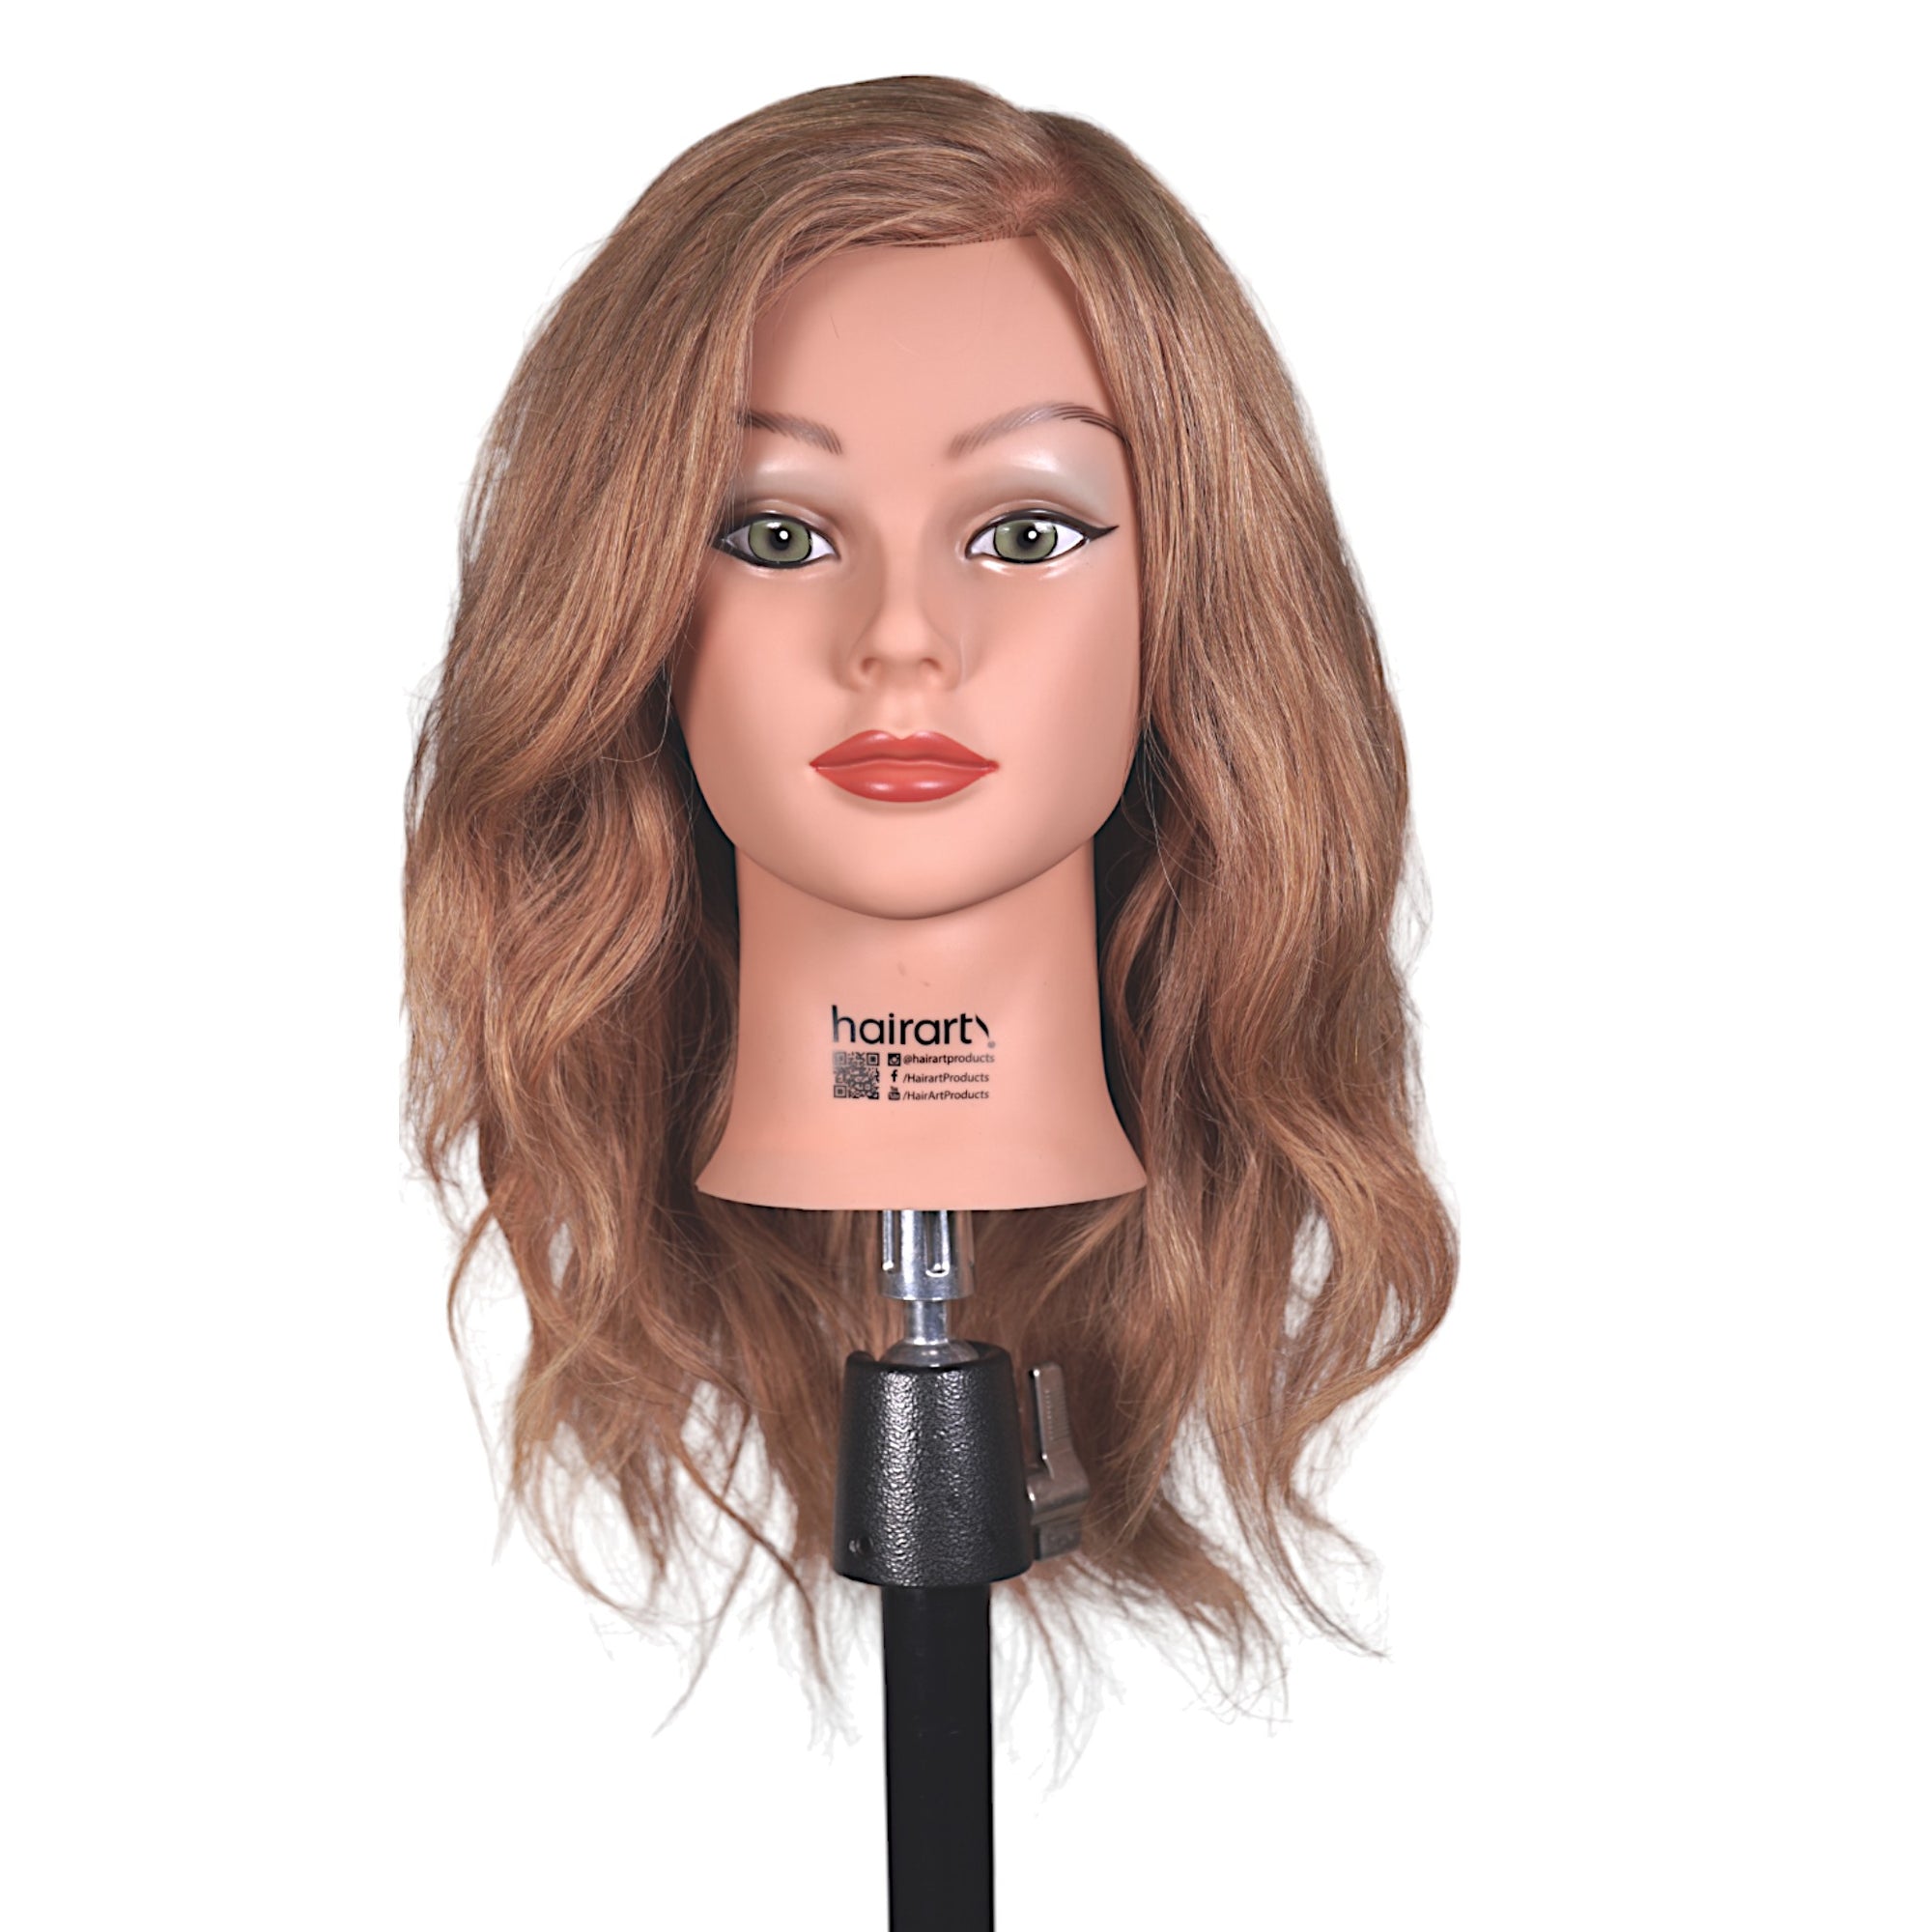 Brooke [100% Human Hair Mannequin] Long Hair Training Head